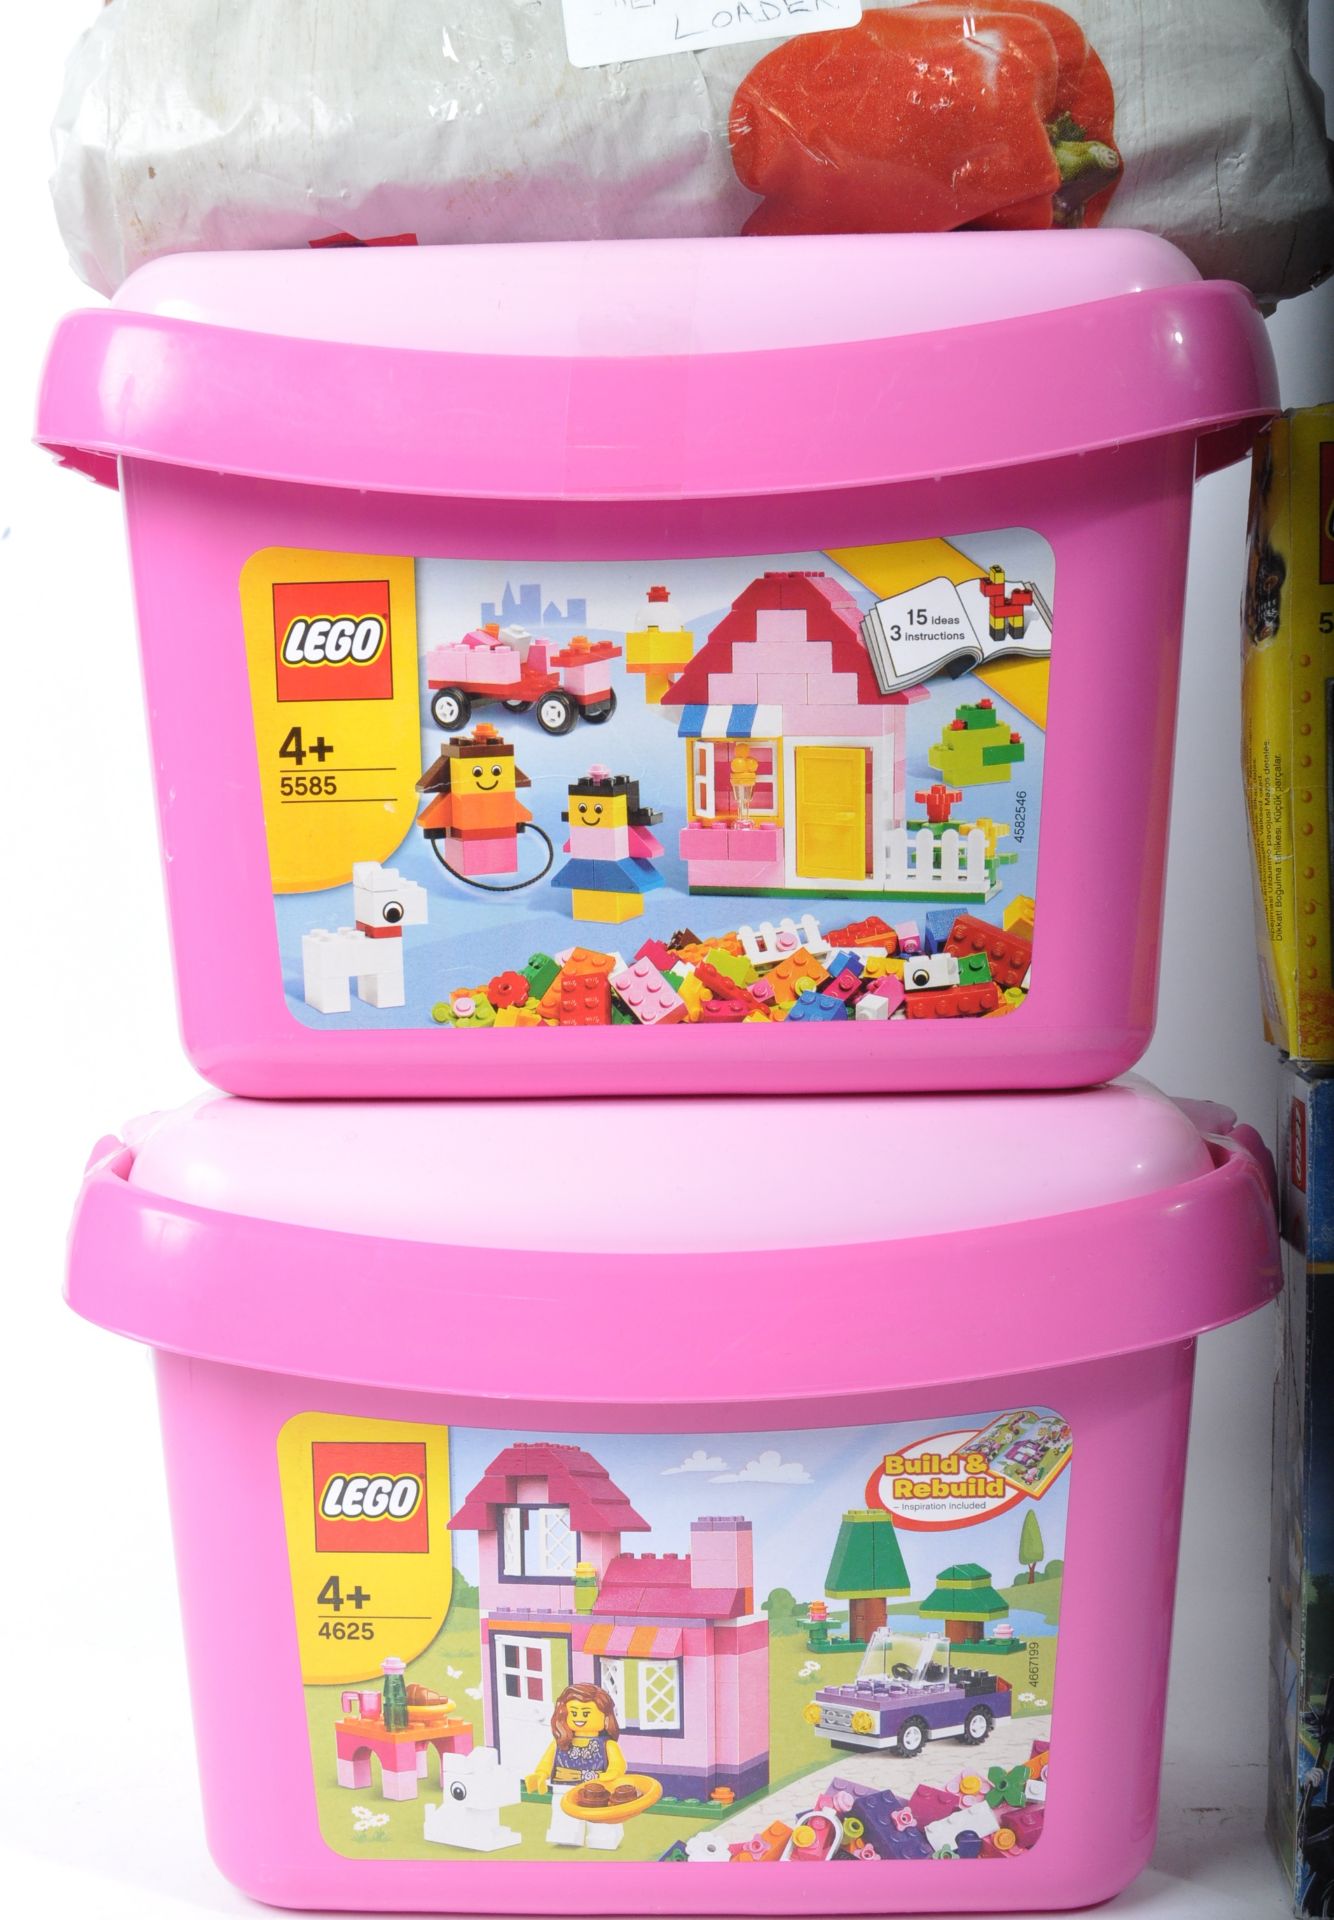 LEGO SETS - 41230 / 79118 / 60041 / 79106 / 5882 / 4625 / 5585 / 7900 - Image 2 of 5